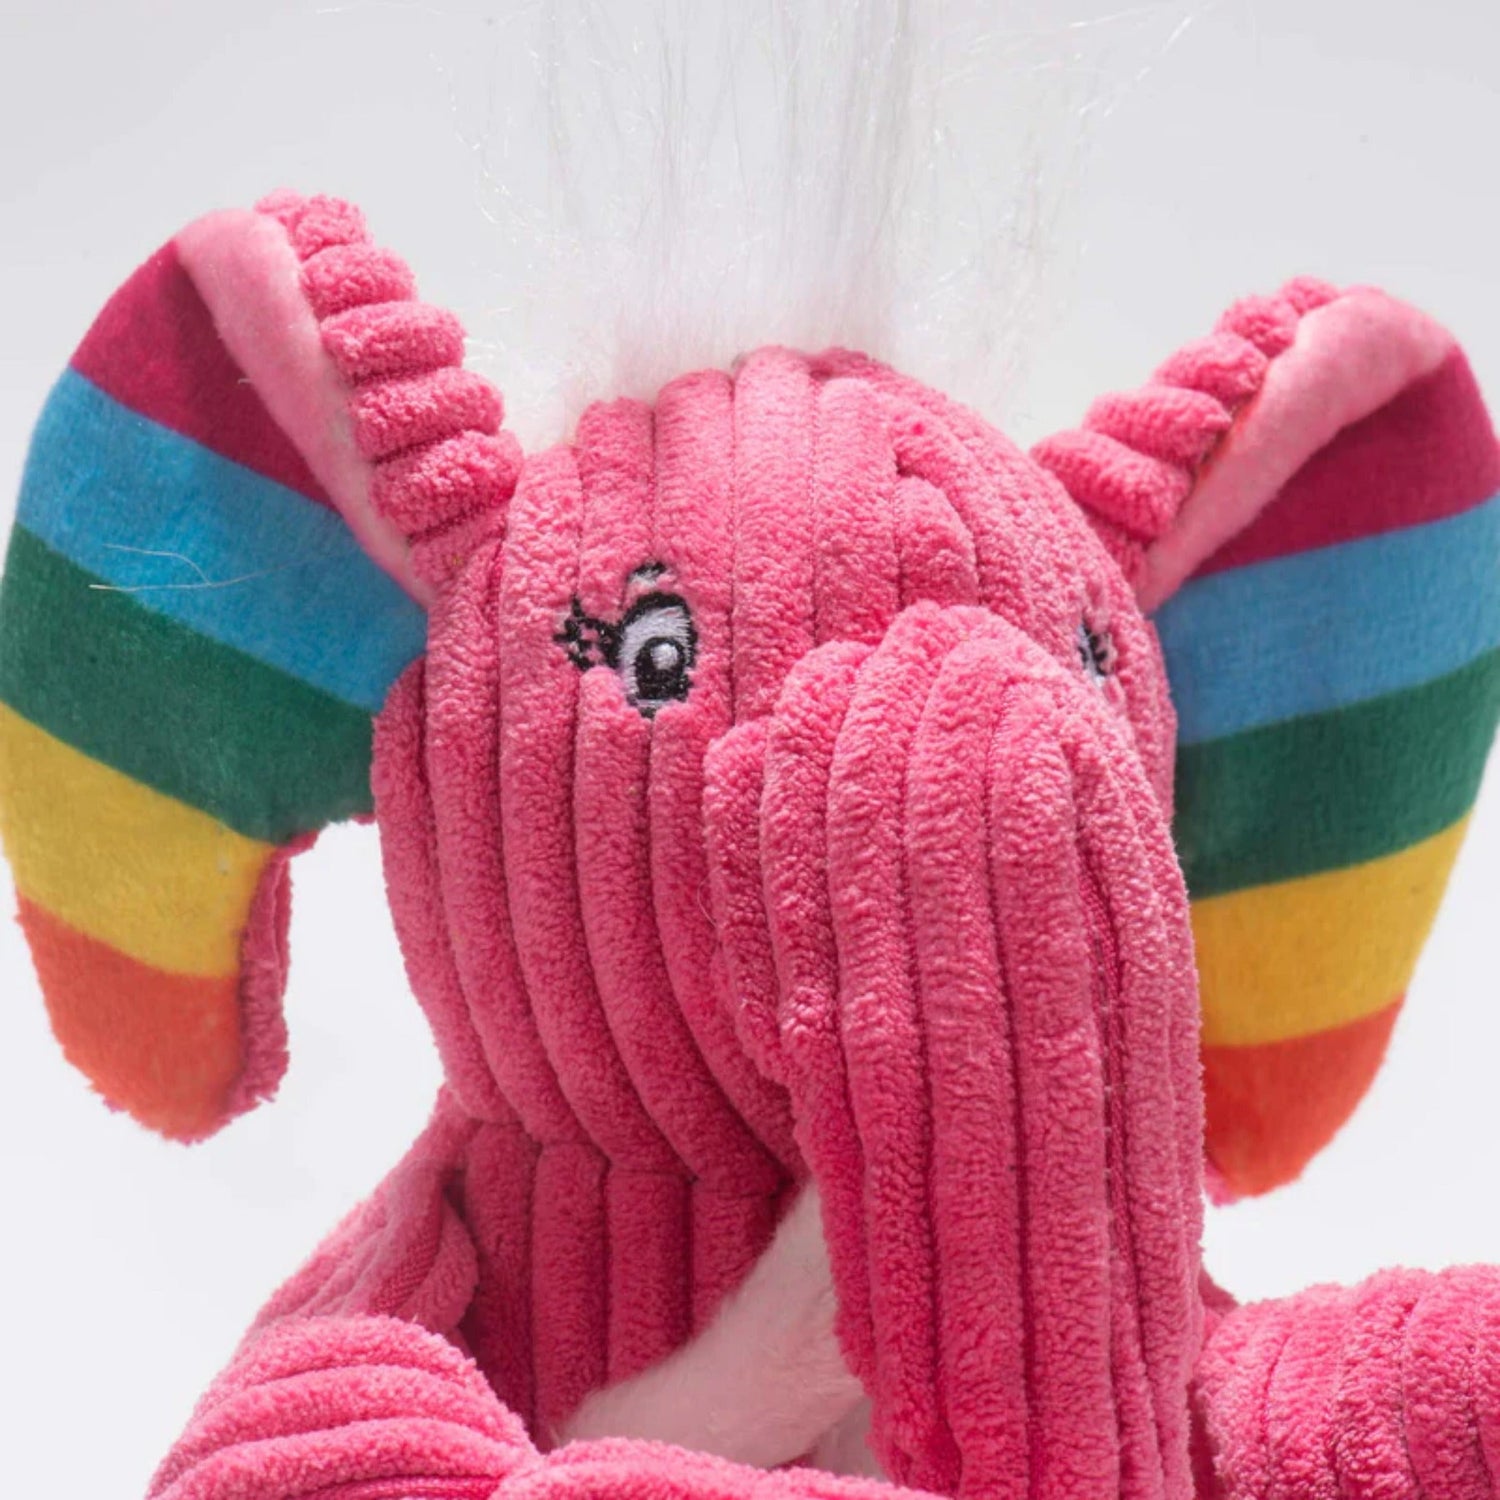 Hugglehounds Rainbow Elephant Knottie, Hundespielzeug - Woofshack